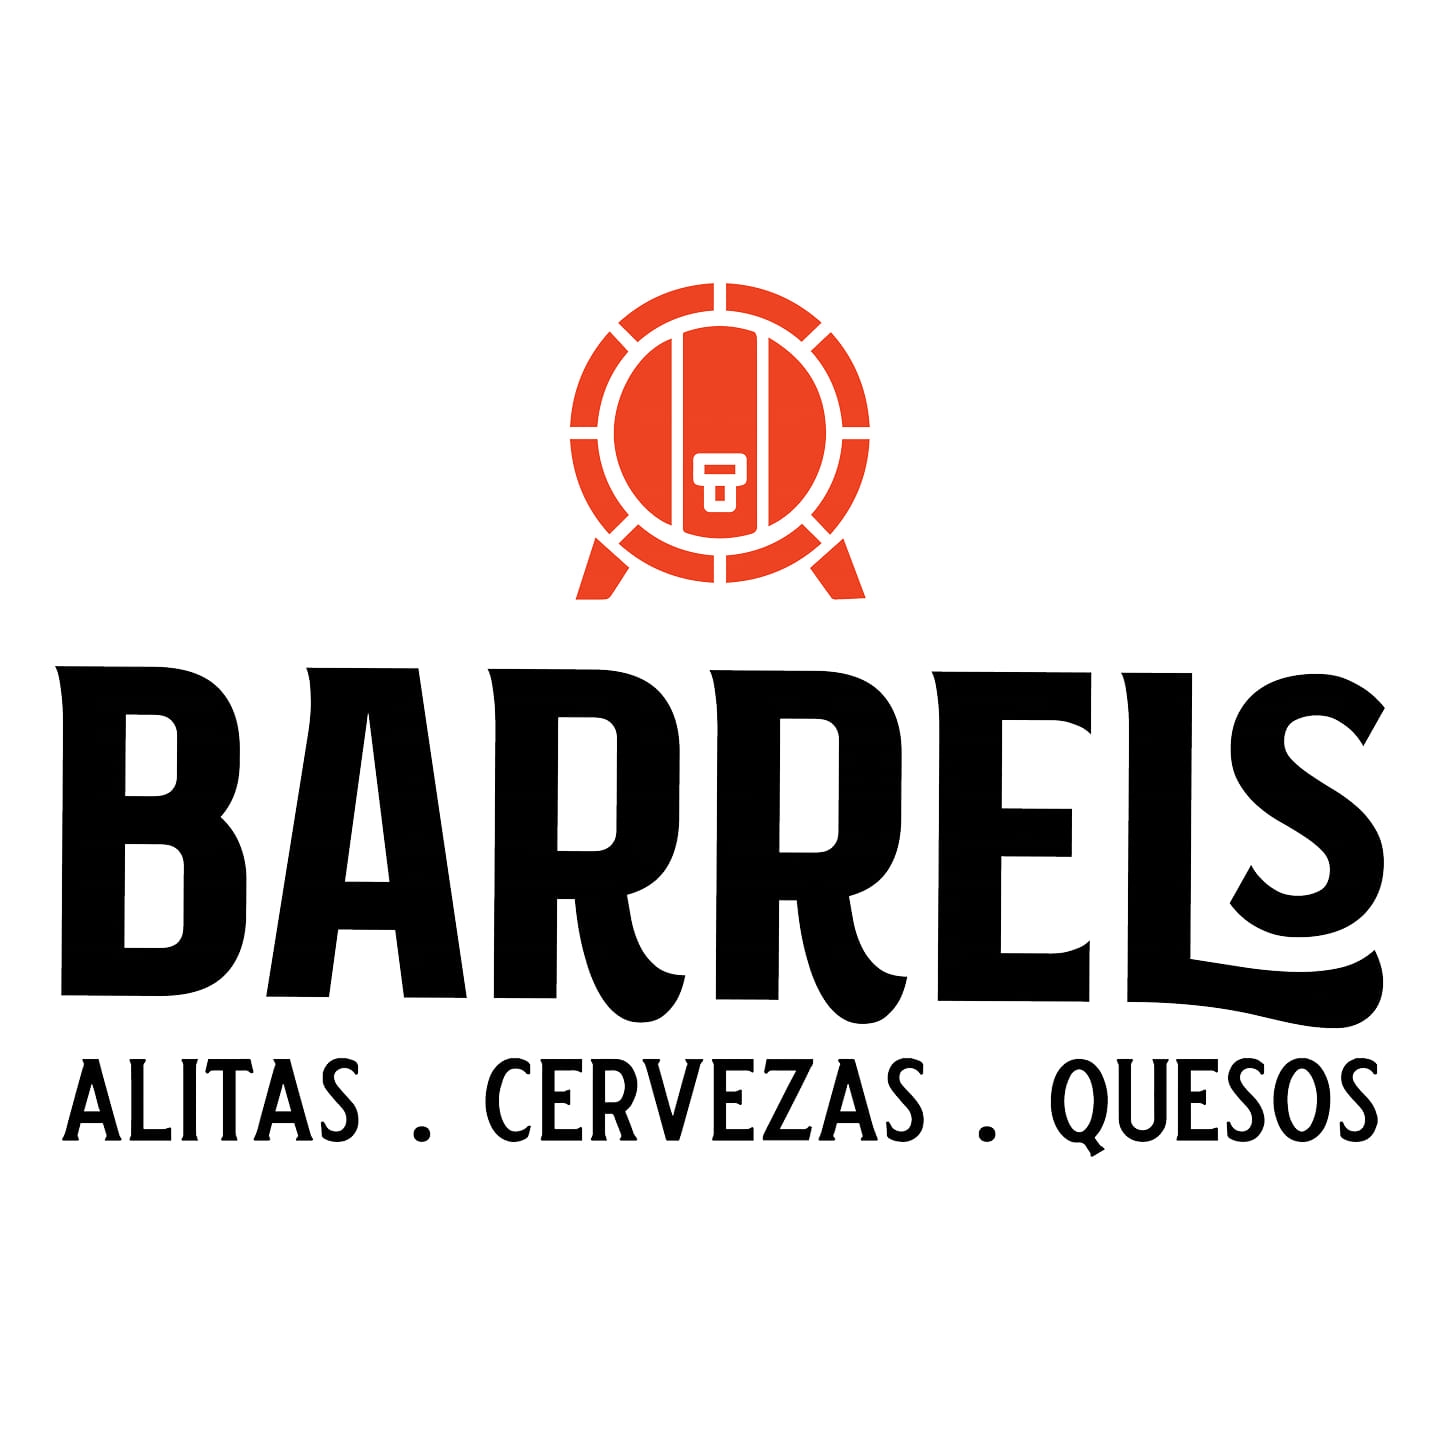 Barrels logo